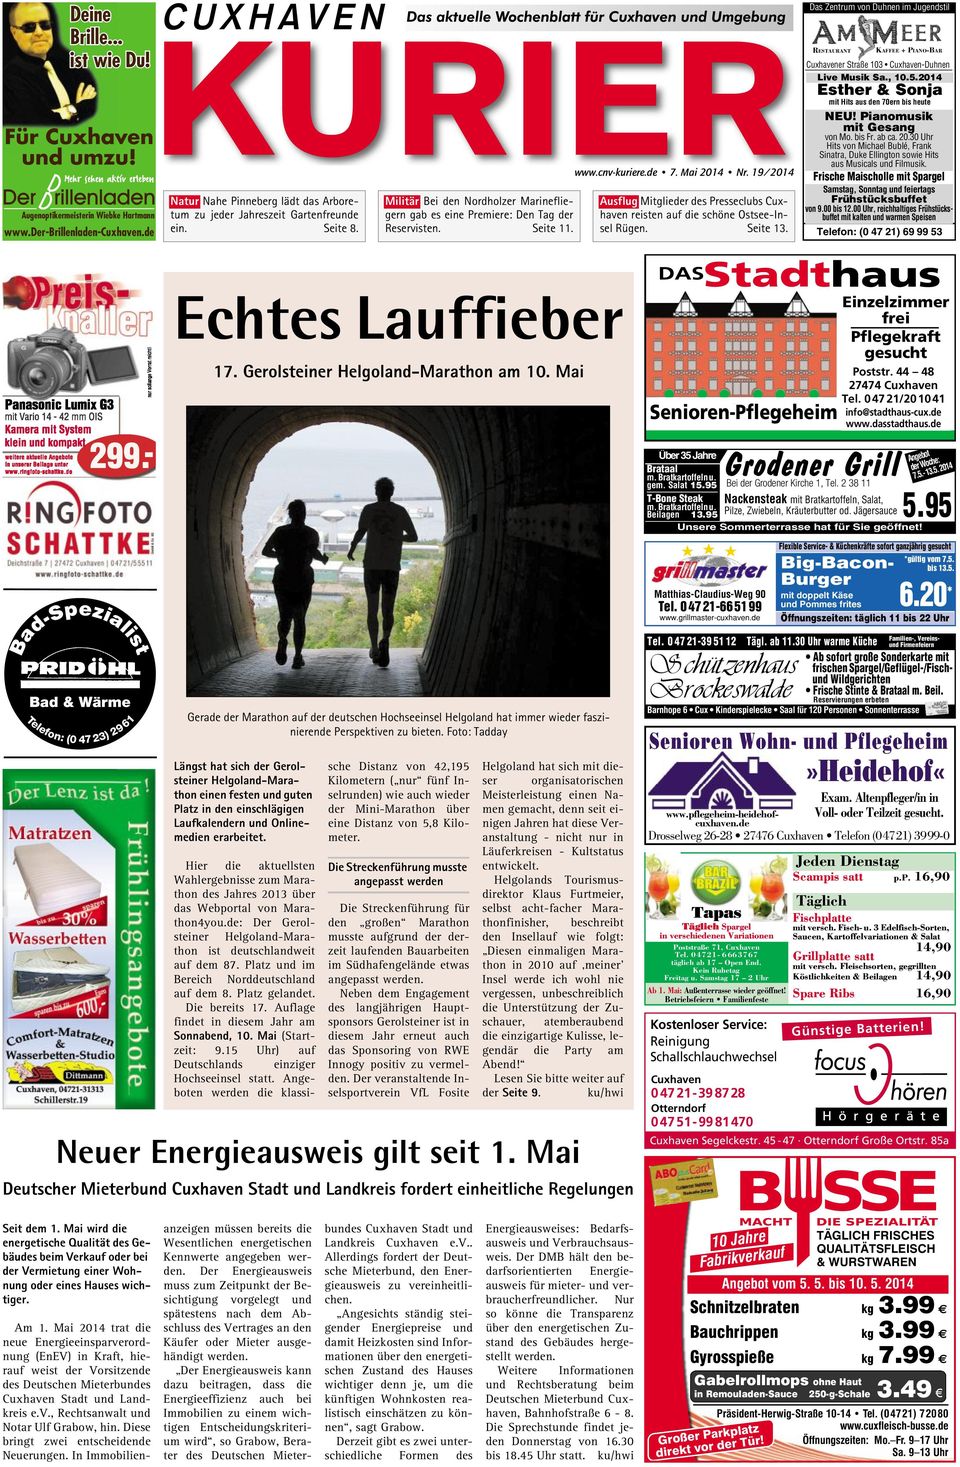 cnv-kuriere.de 7. Mai 2014 Nr. 19/2014 Ausflug Mitglieder des Presseclubs Cuxhaven reisten auf die schöne Ostsee-Insel Rügen. Seite 13.